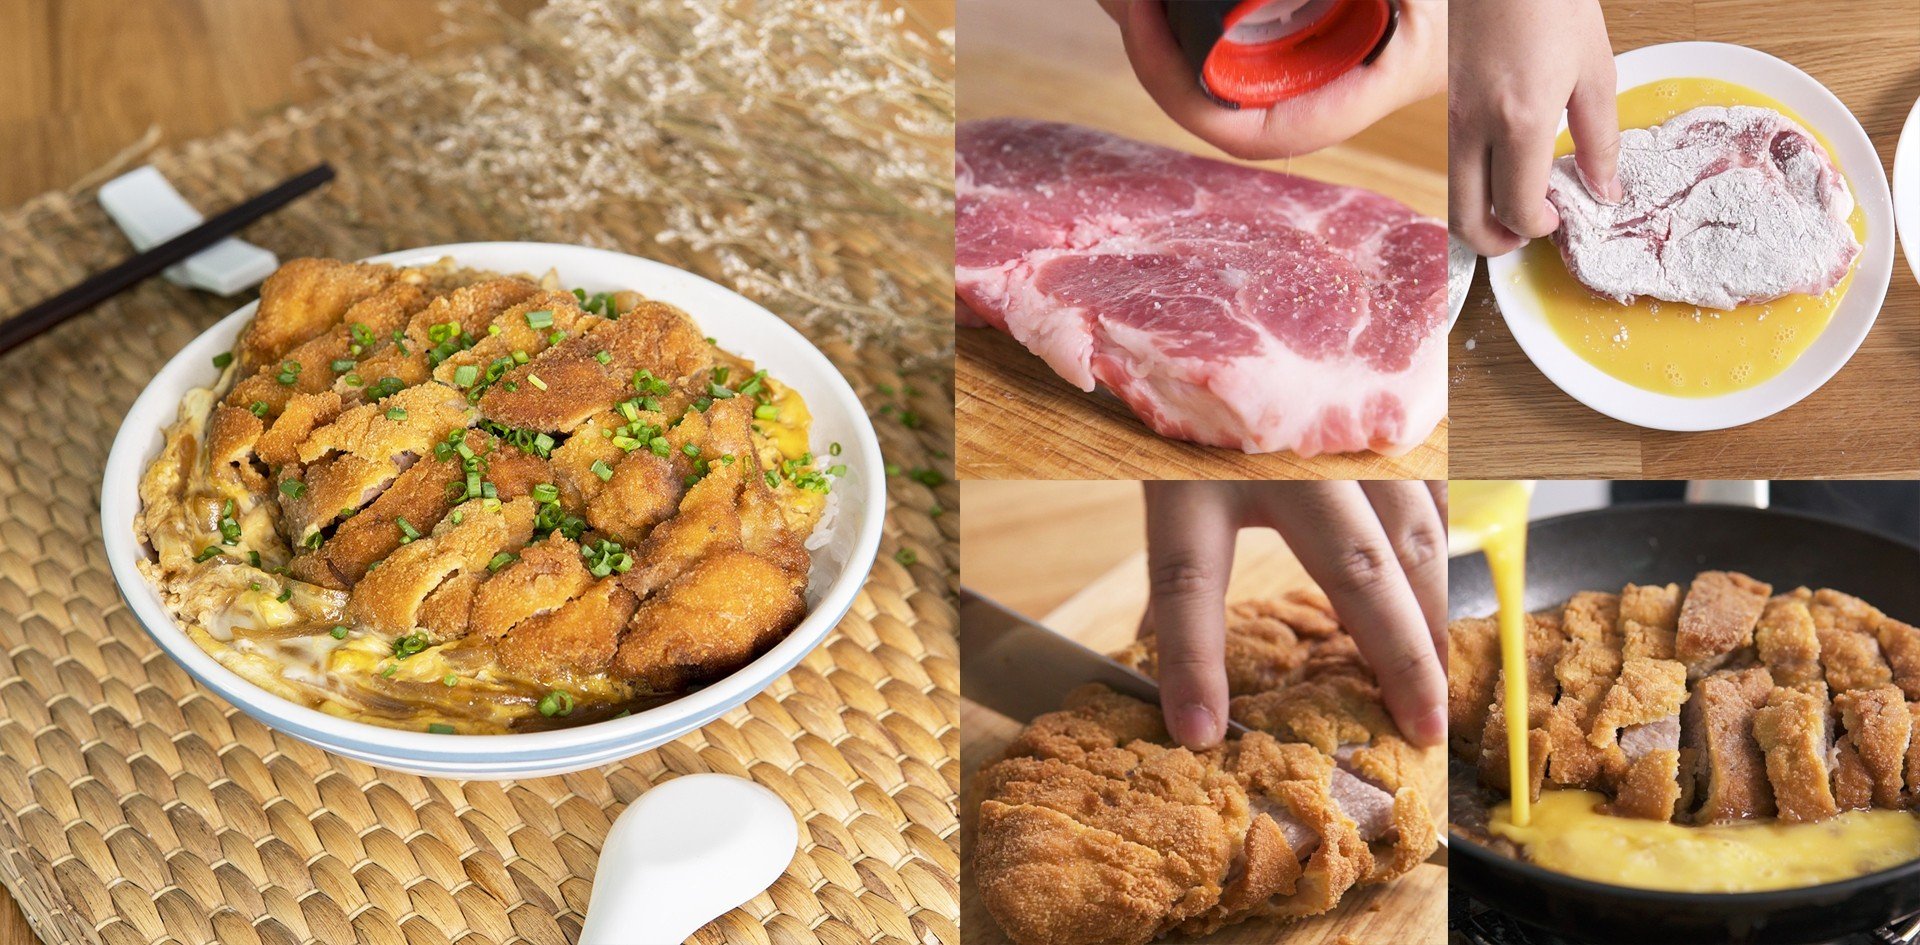 วิธีทำ “คัตสึด้ง” เมนูอาหารญี่ปุ่นจานเด็ด หมูทอดชิ้นโต ฟินทุกคำที่กิน!